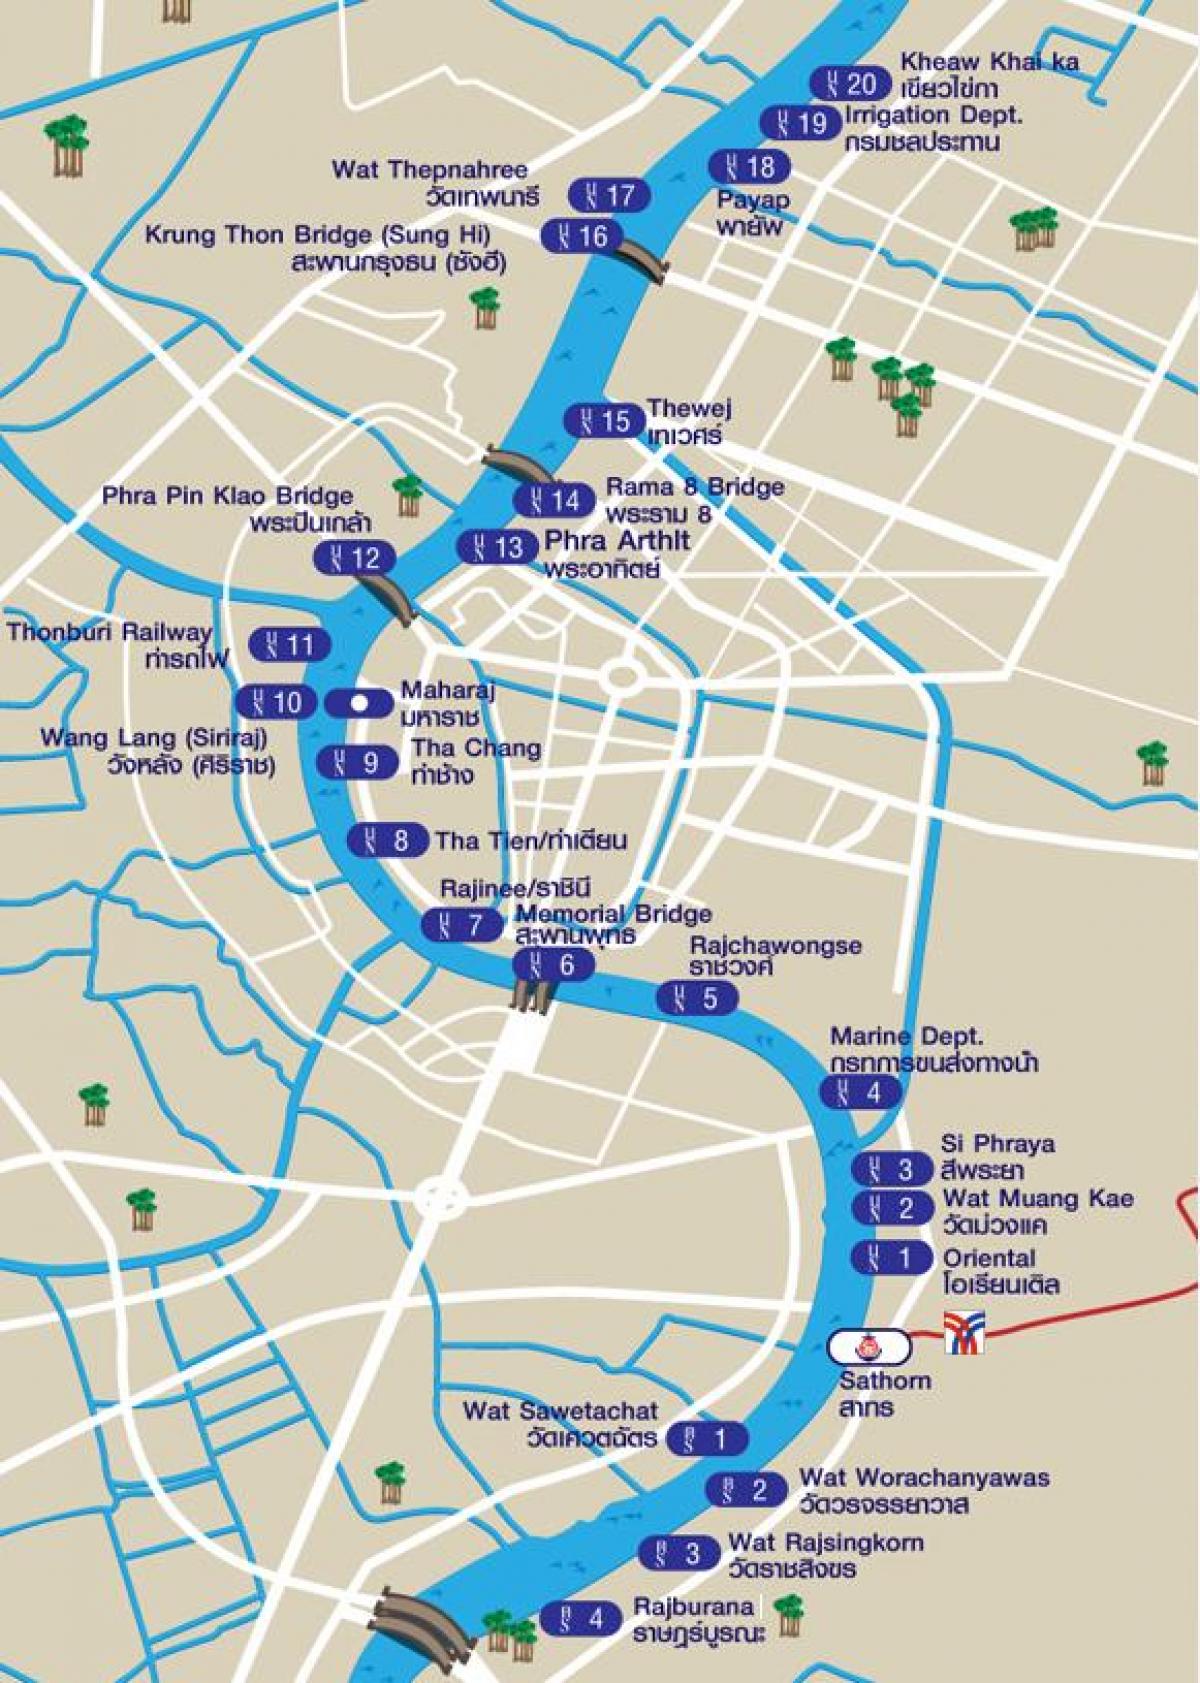 reka taxi zemljevid bangkok